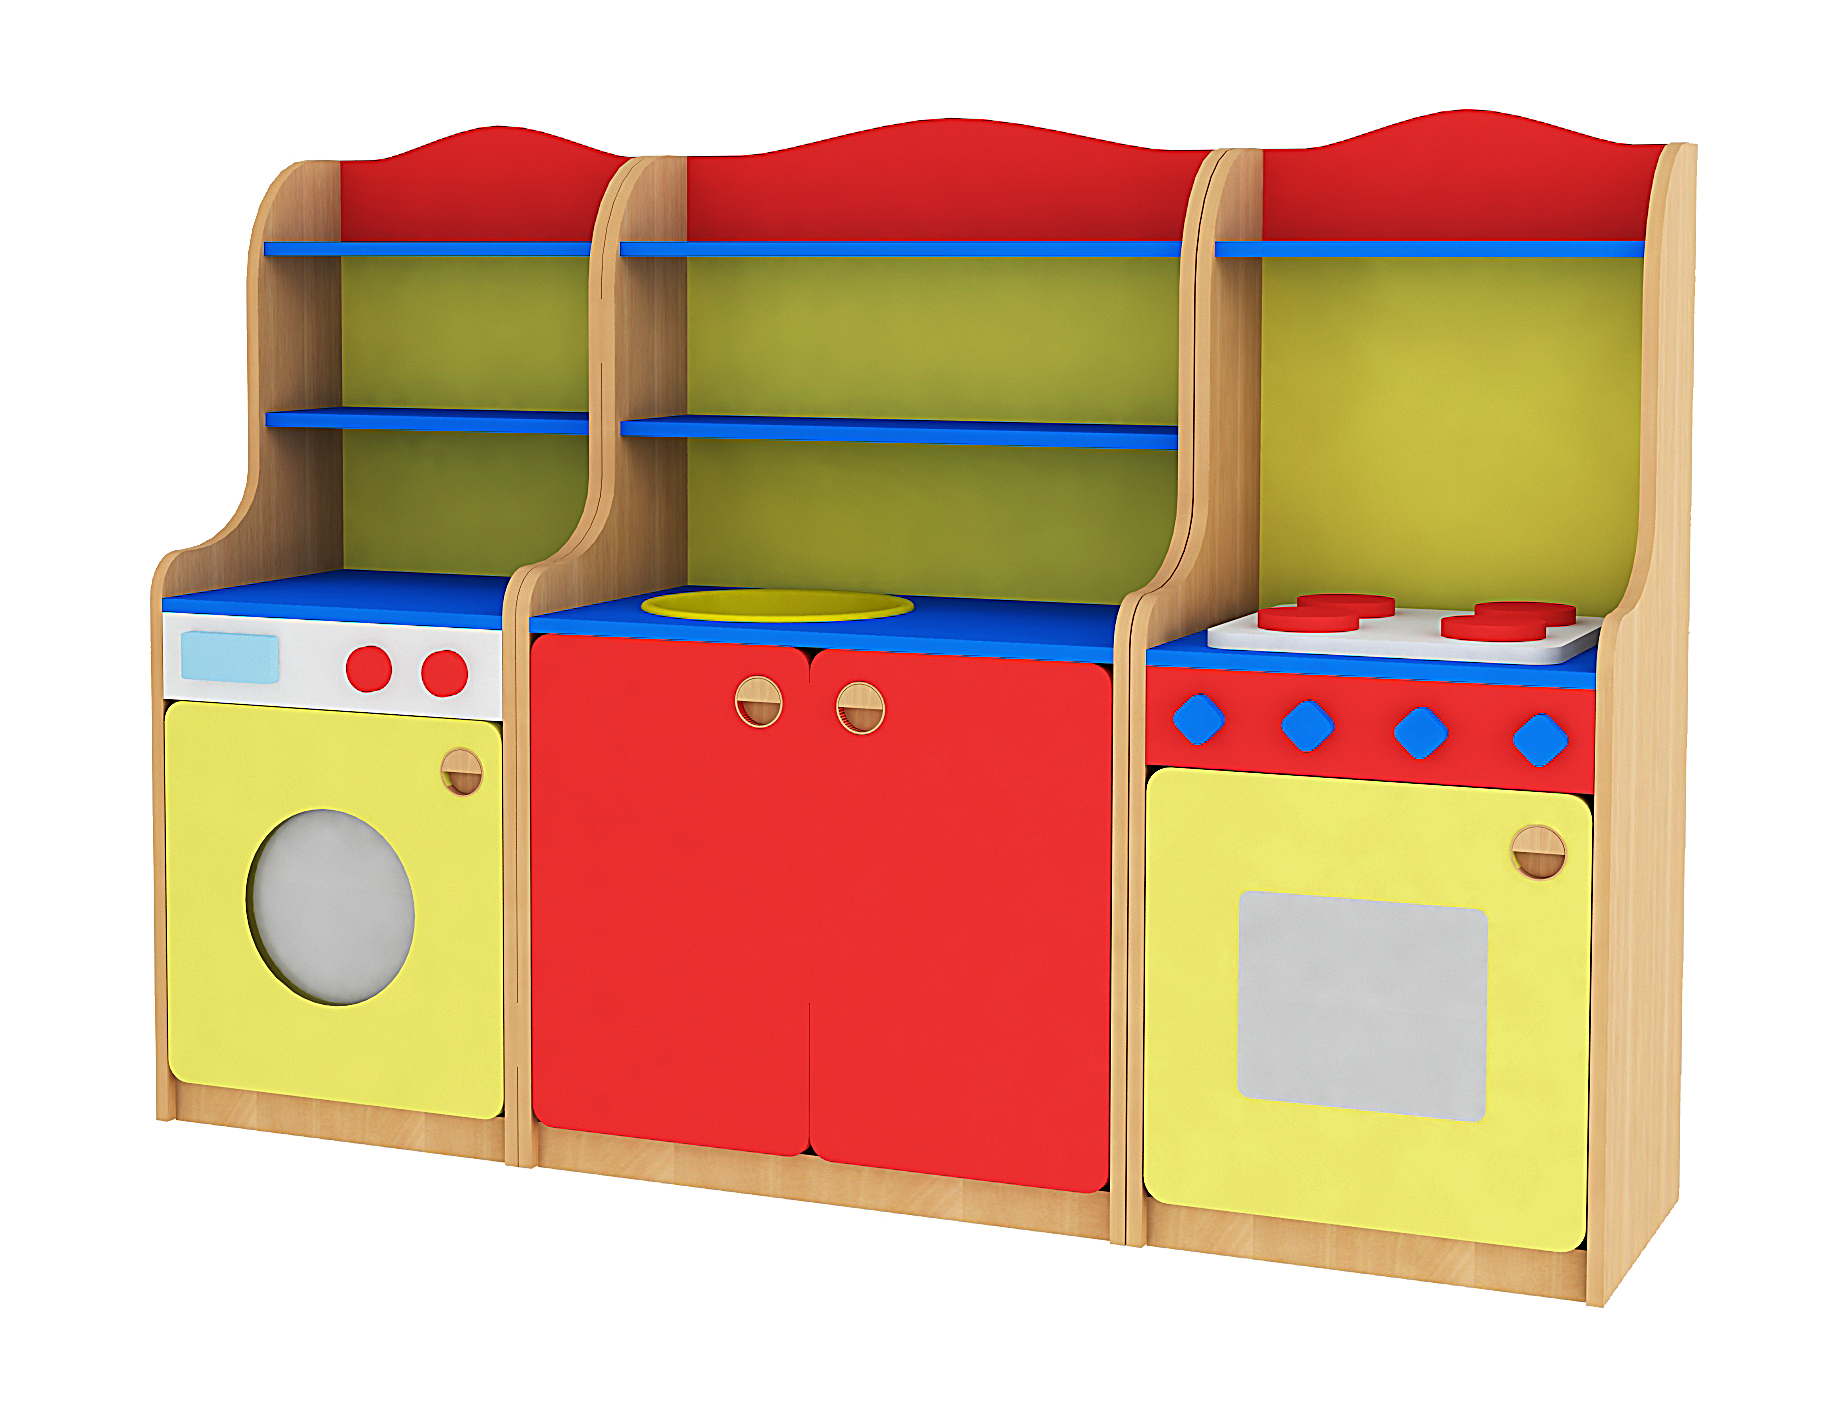 Сайт детской мебели для детских садов. Игровой модуль кухонька для детского сада. Игровая мебель для детского сада. Игровой уголок кухня в детском саду. Игровая мебель кухня для детского сада.